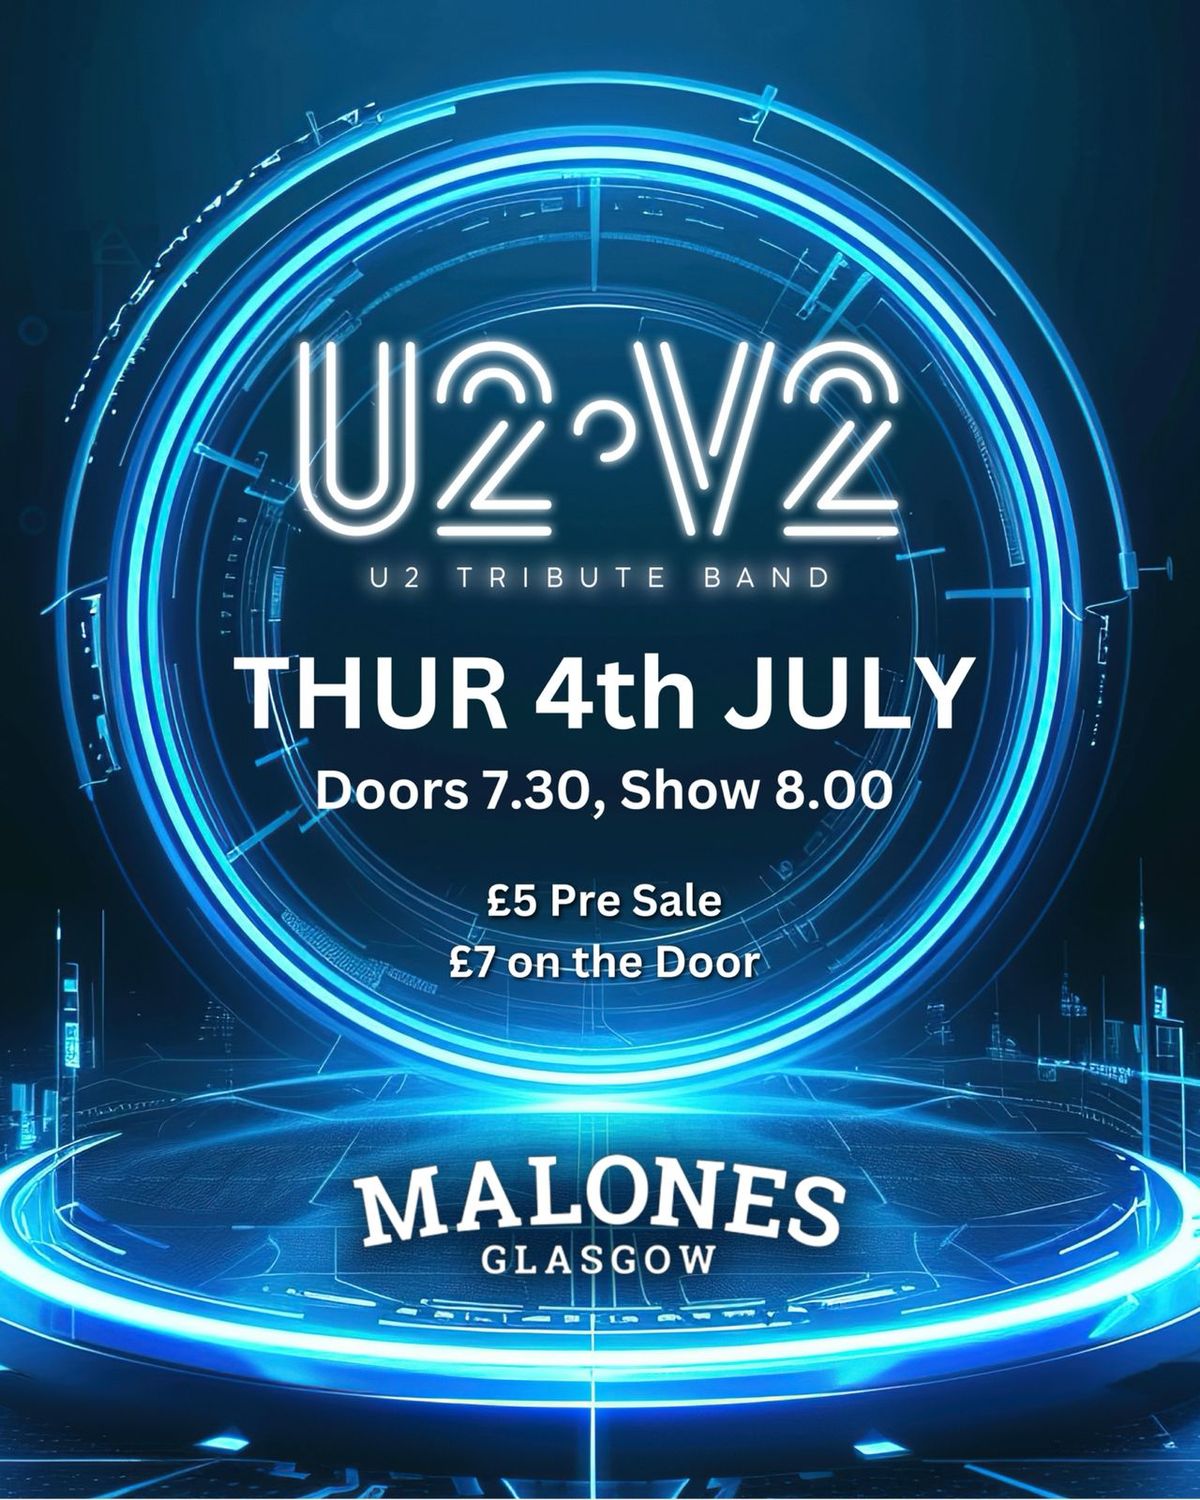 U2.V2 - U2 TRIBUTE BAND LIVE IN THE LOFT AT MALONES